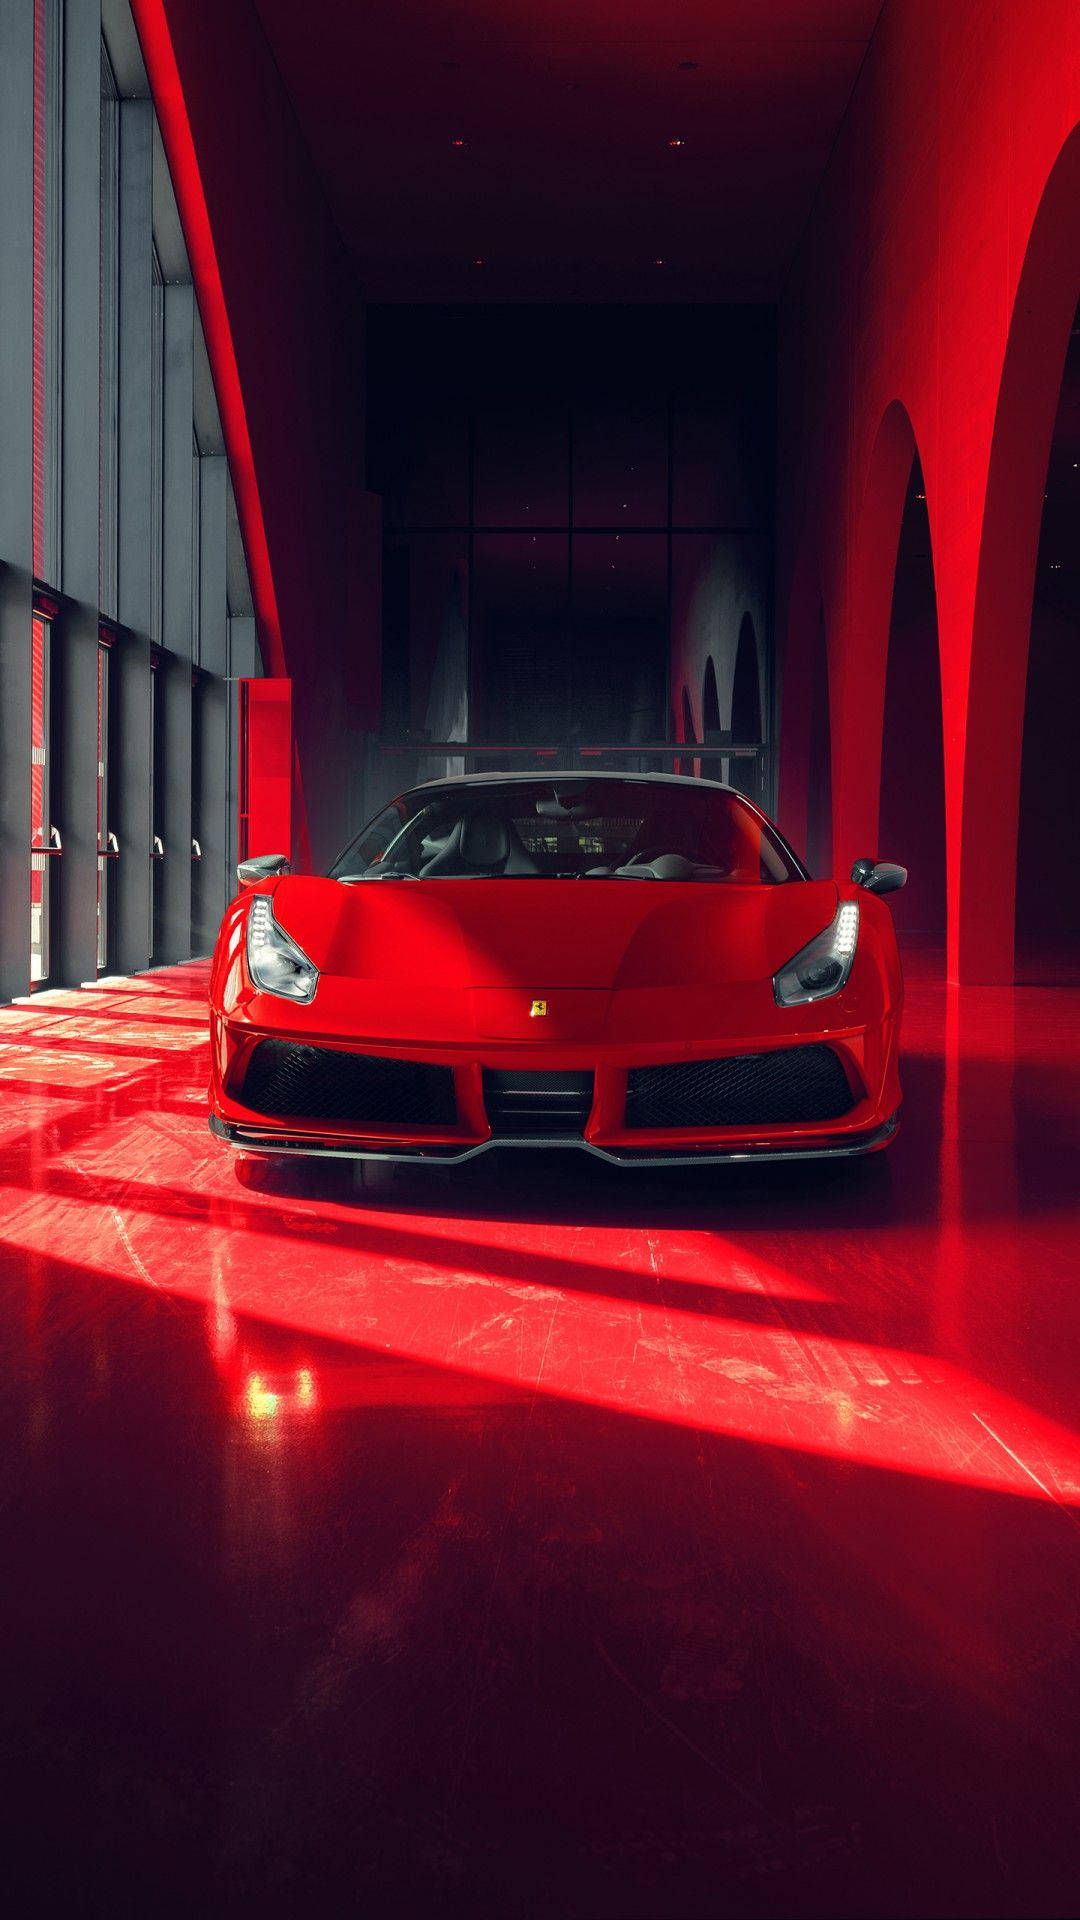 Futuristic Ferrari Iphone Wallpaper